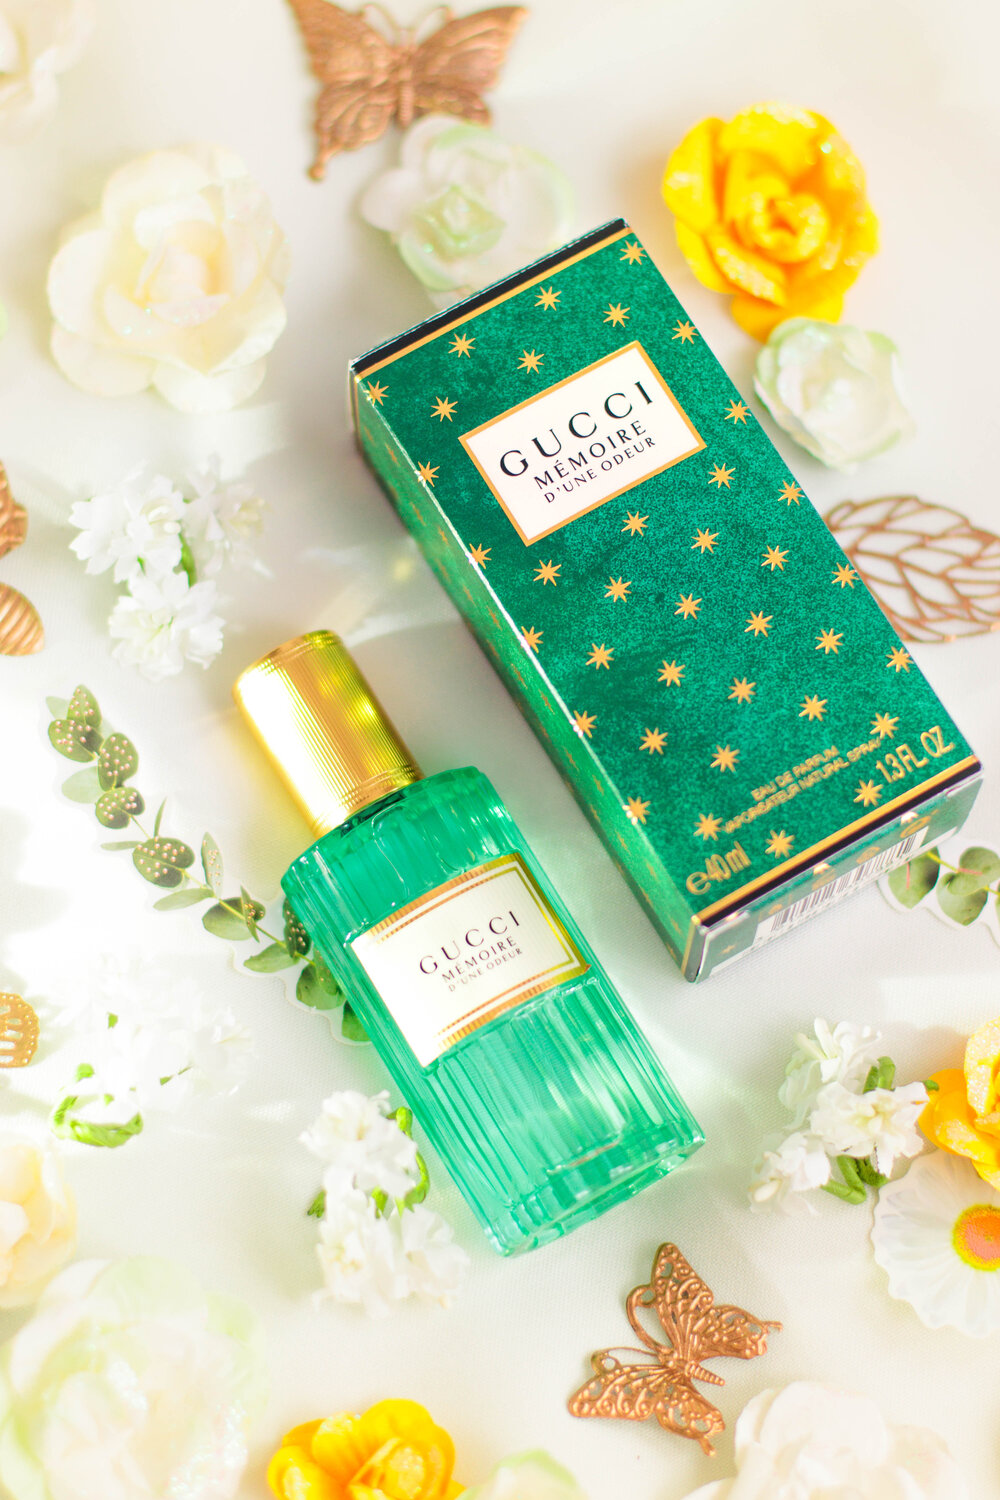 Gucci Mémoire d'une odeur, un parfum surprenant — Pauuulette - Blog Makeup